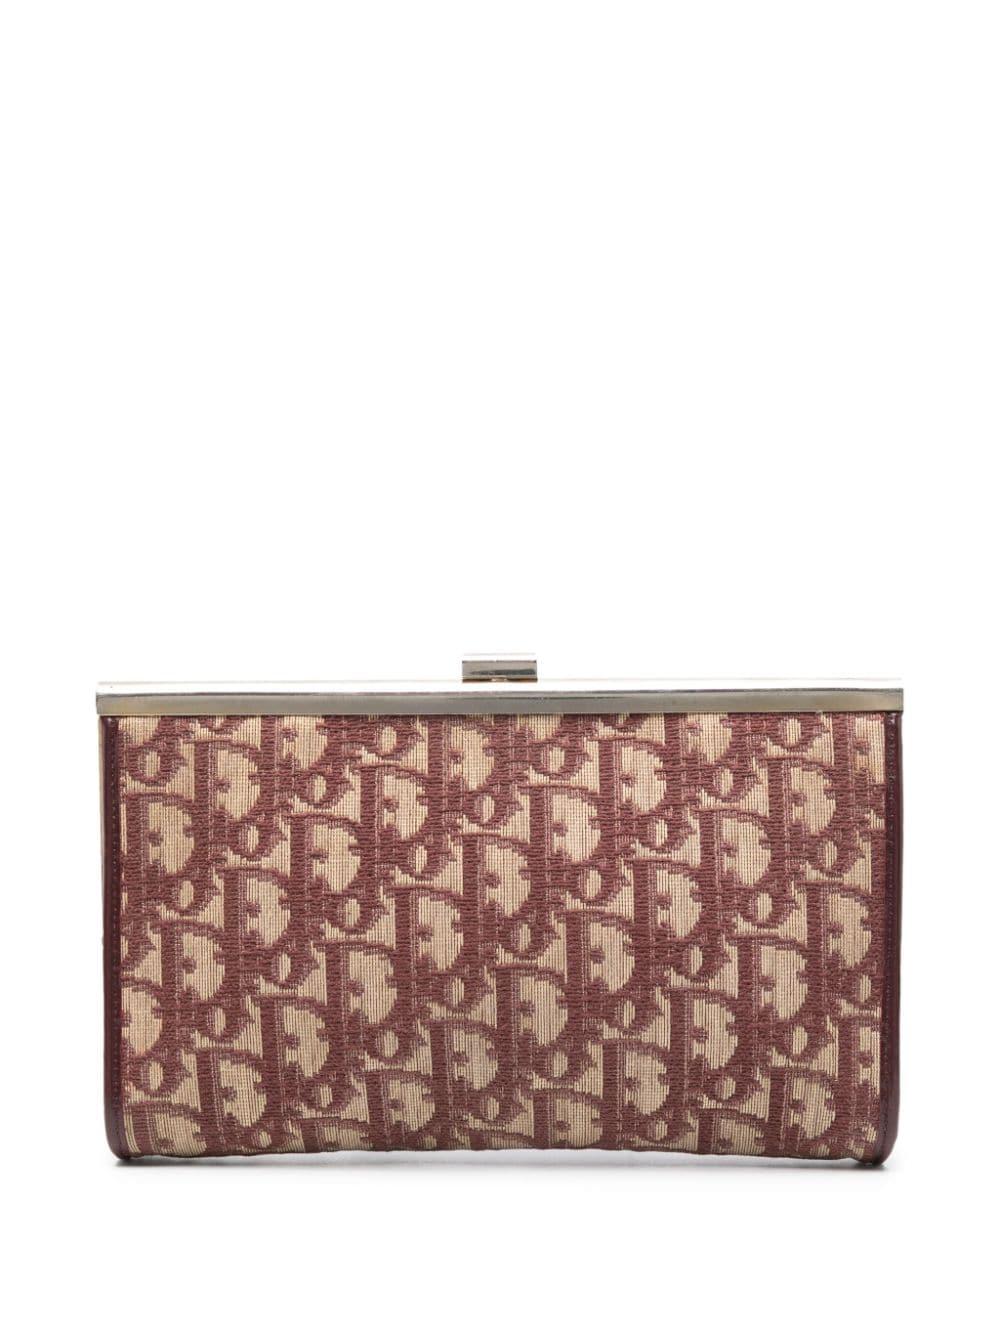 1970s Christian Dior Bordeaux Oblique Clutch Bag For Sale 2